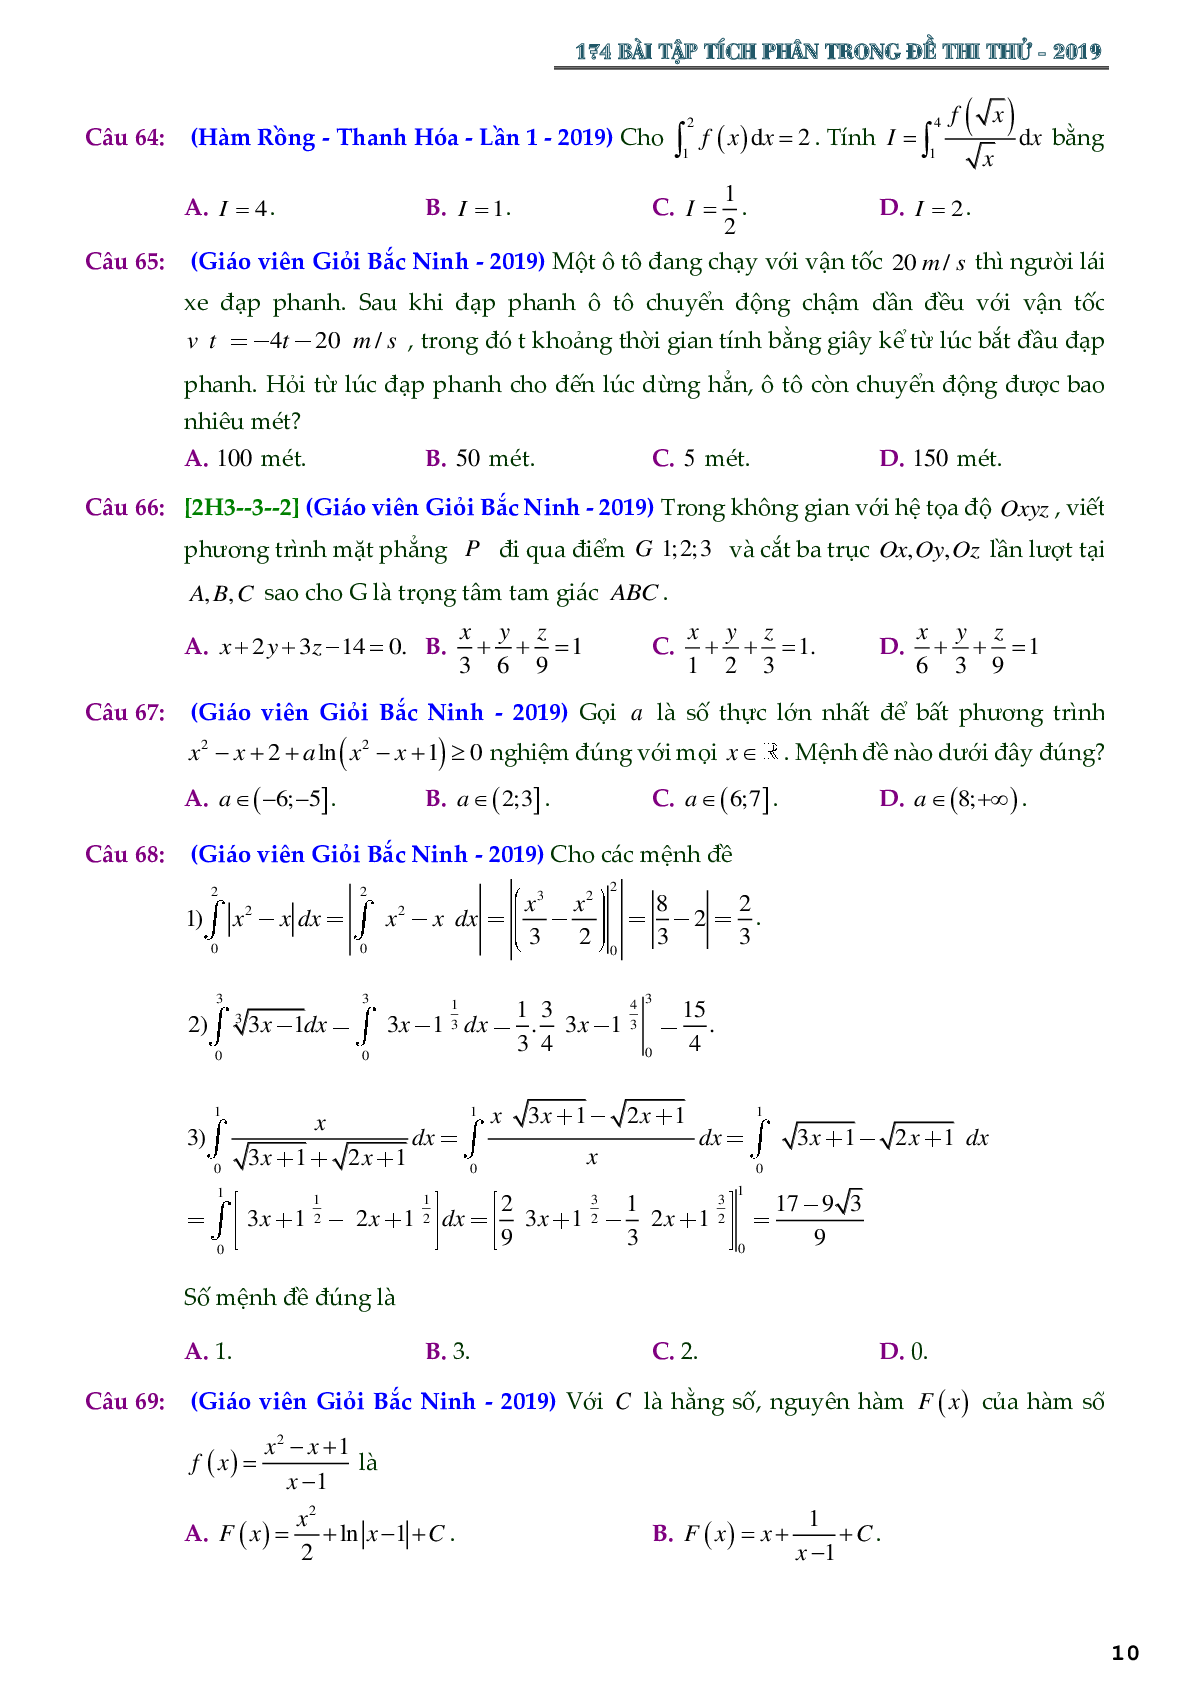 174 bài toán nguyên hàm tích phân trong các đề thi thử THPTQG 2019 - có đáp án chi tiết (trang 10)